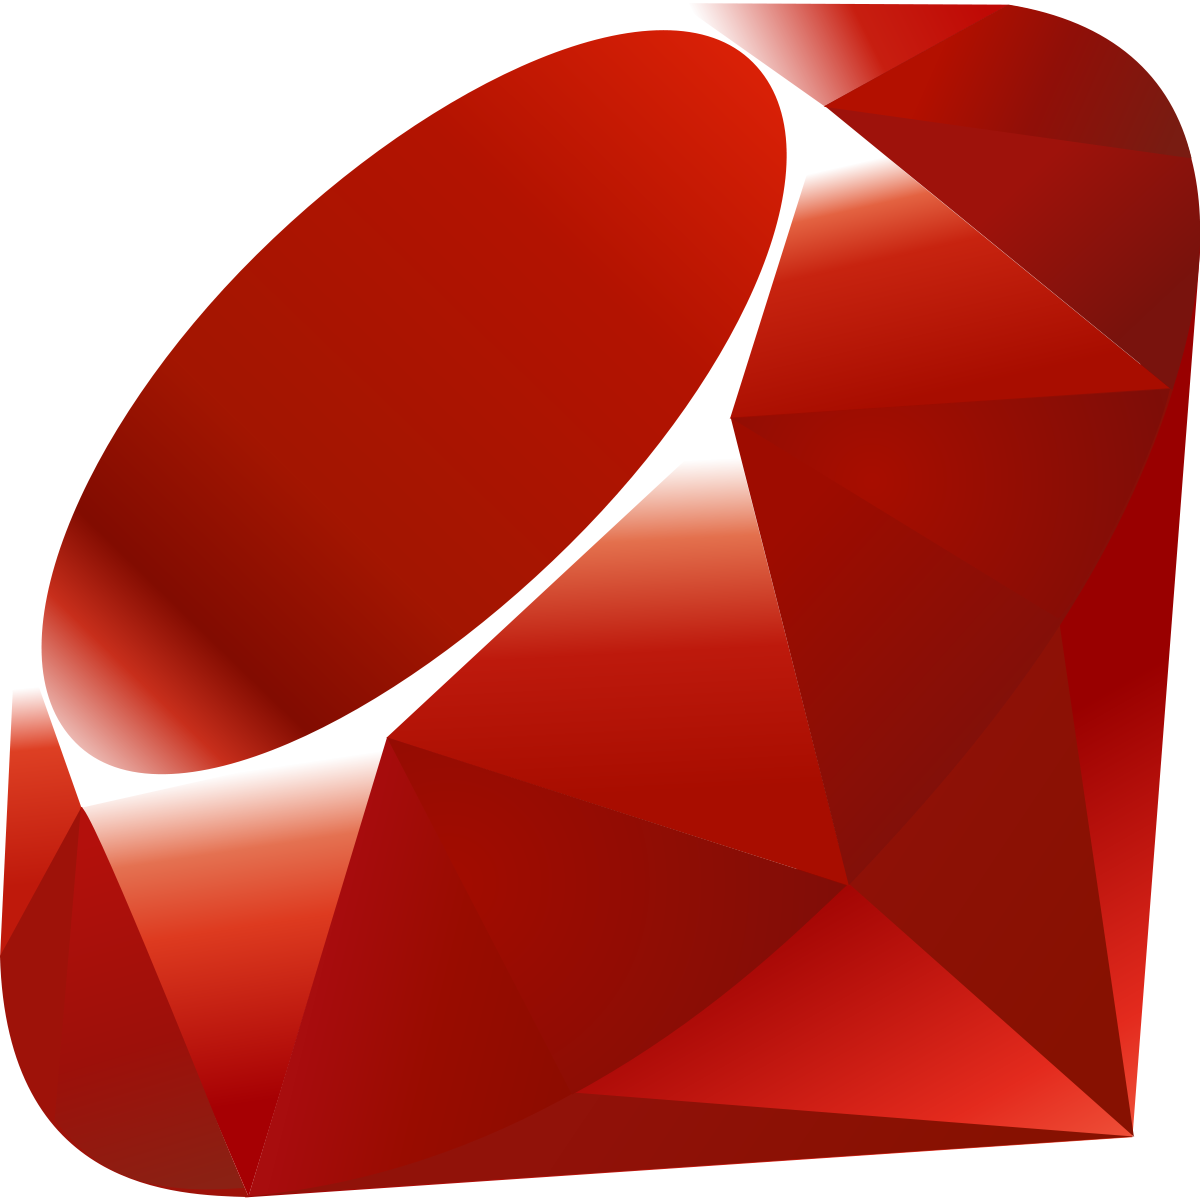 Ruby on Rails Developer